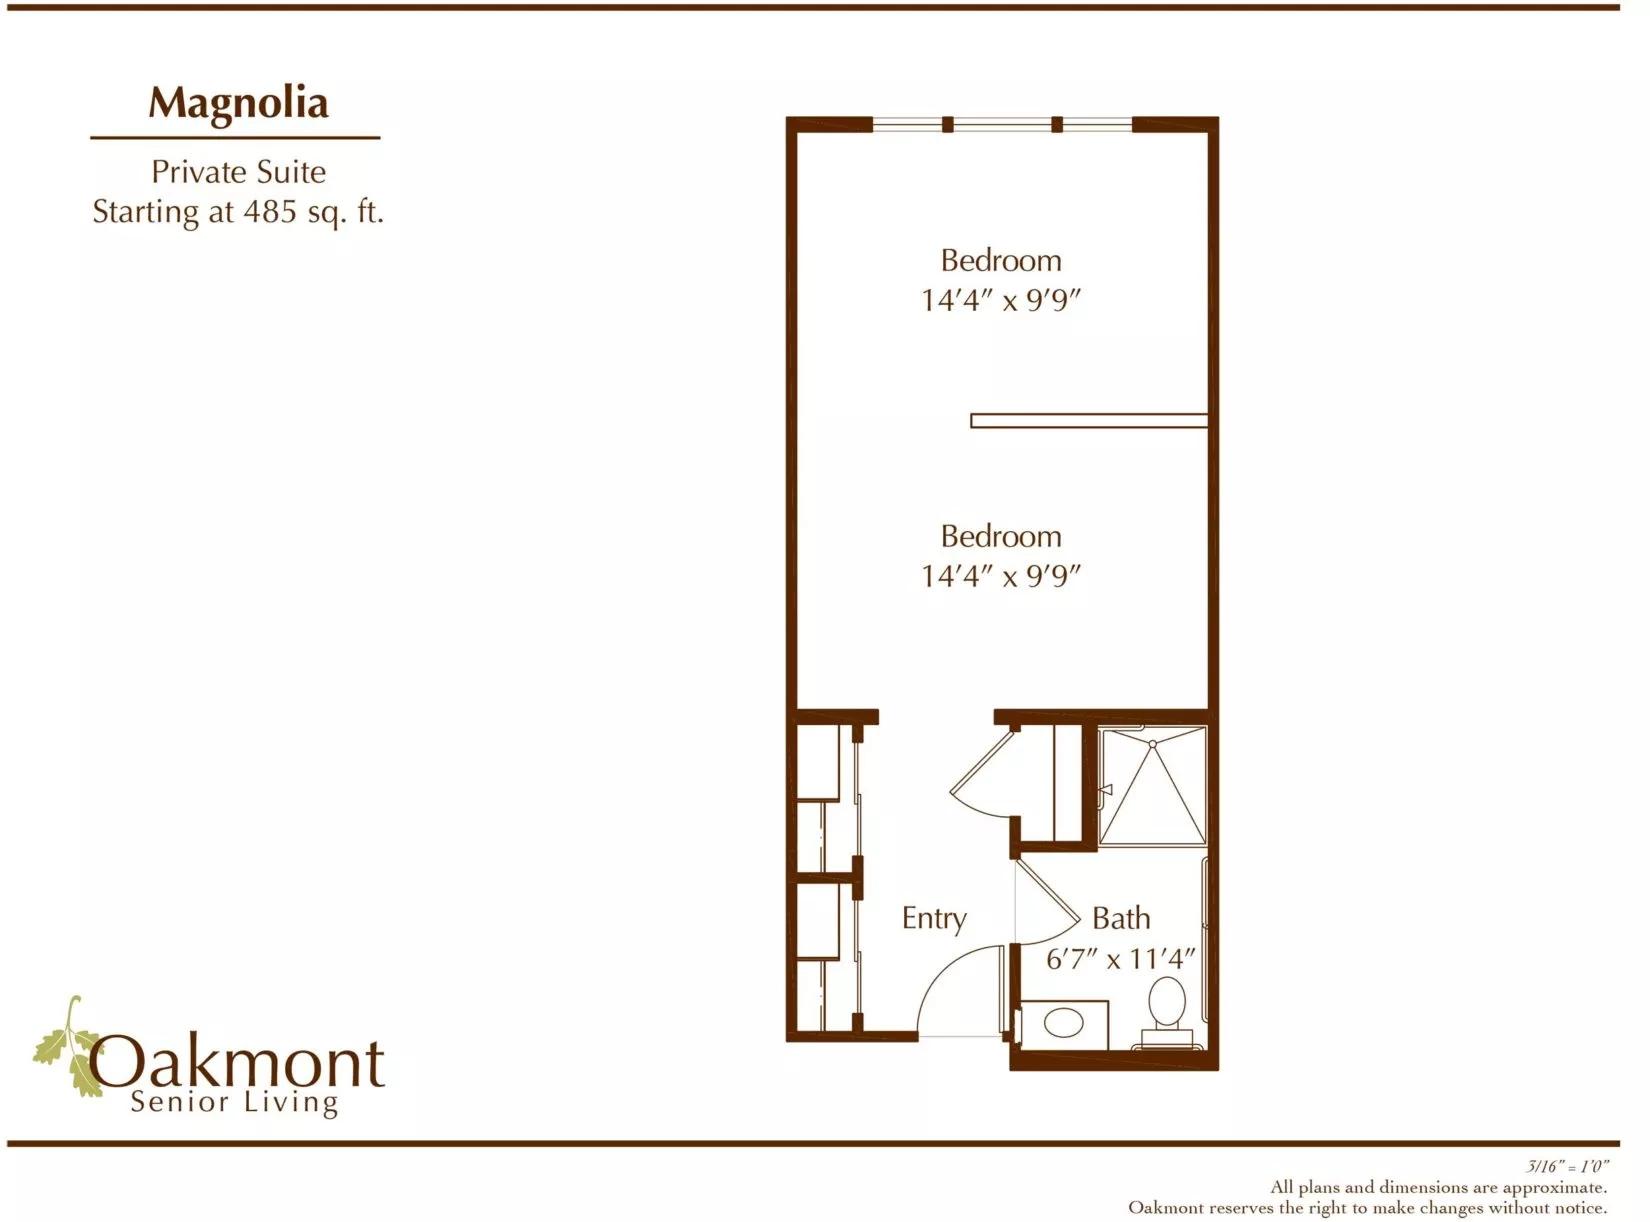 Magnolia Private Suite floor plan